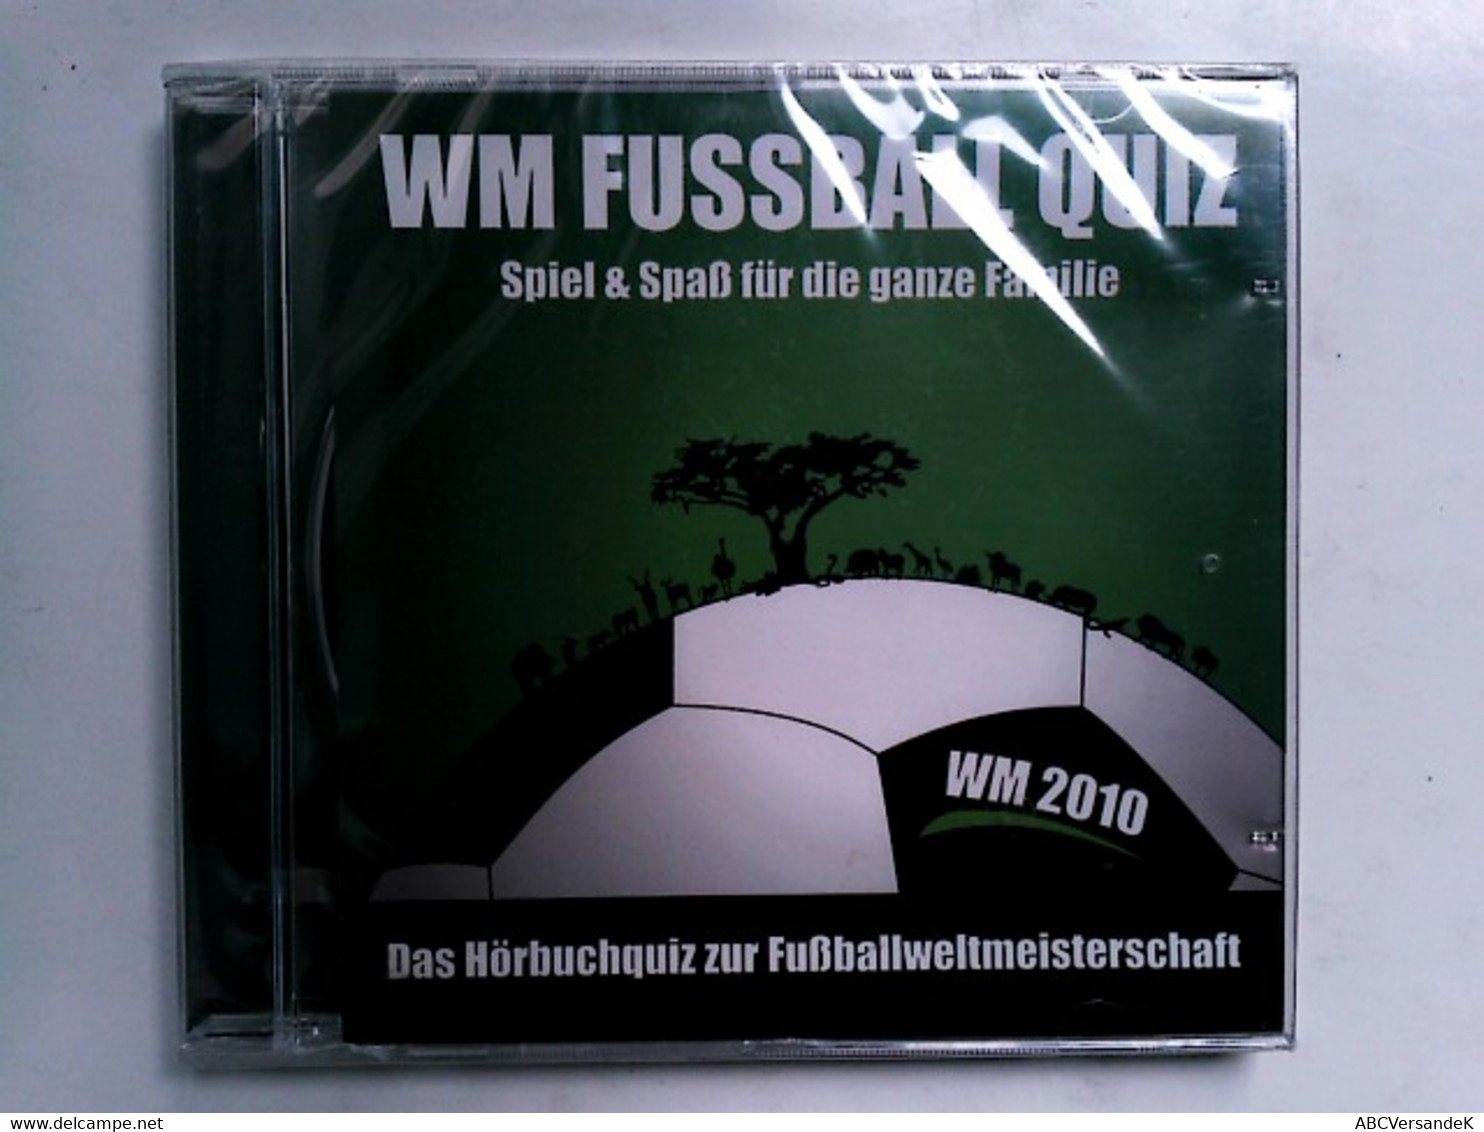 WM Fussball Quiz - Spiel & Spaß Für Die Ganze Familie - Das Hörbuchquiz Zur Fußballweltmeisterschaft - CDs